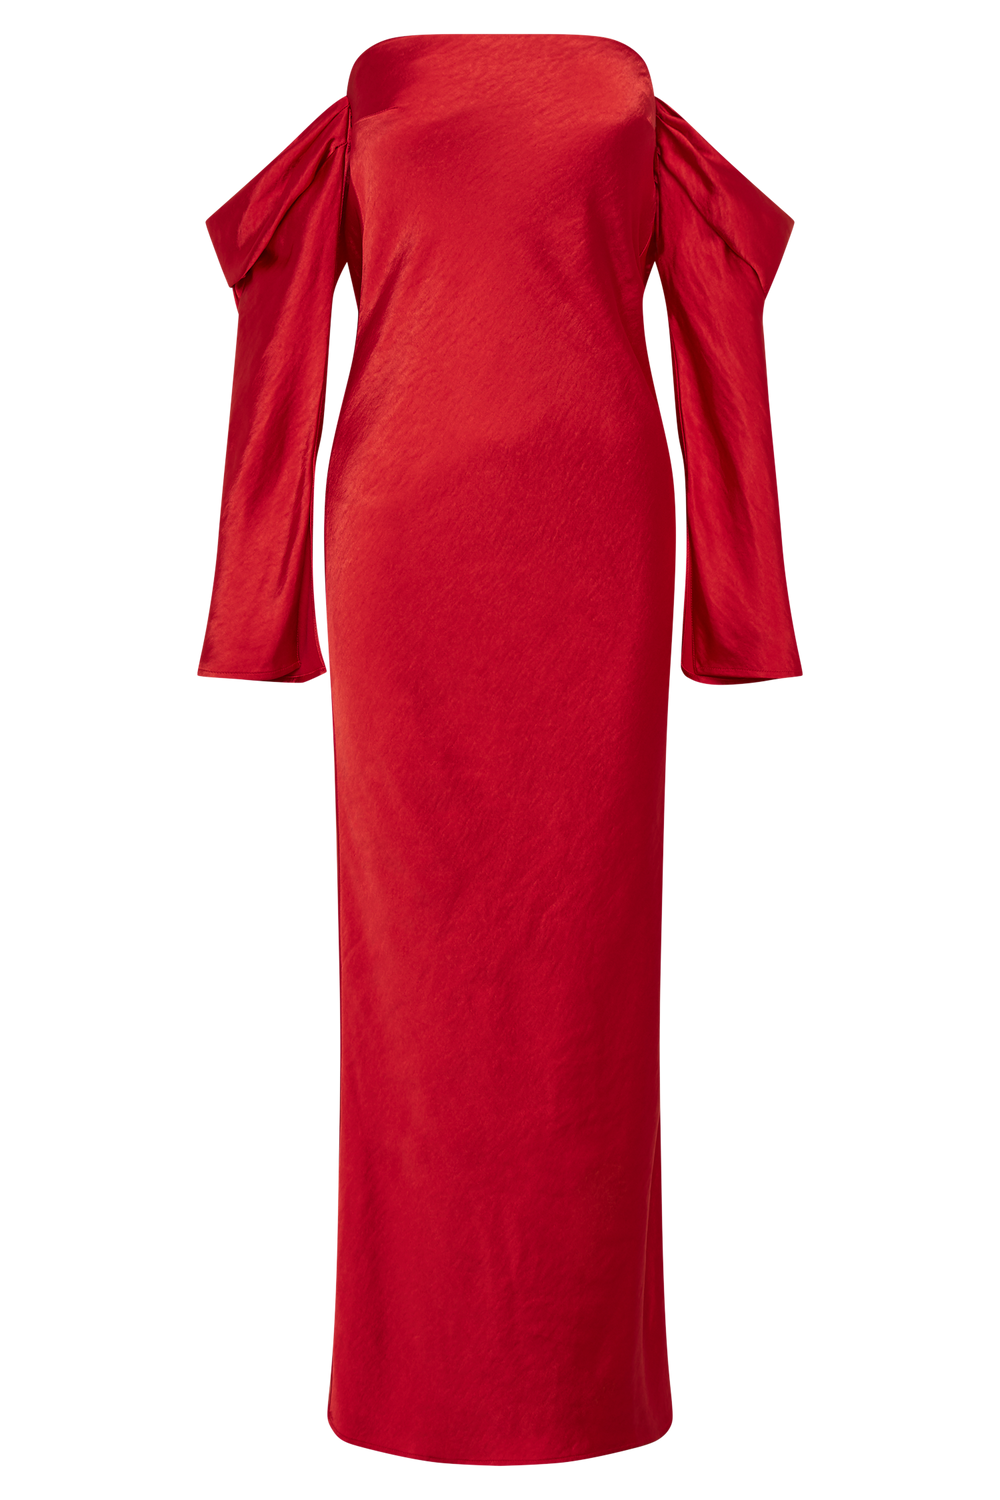 Vee Off Shoulder Satin Midi Dress - Red